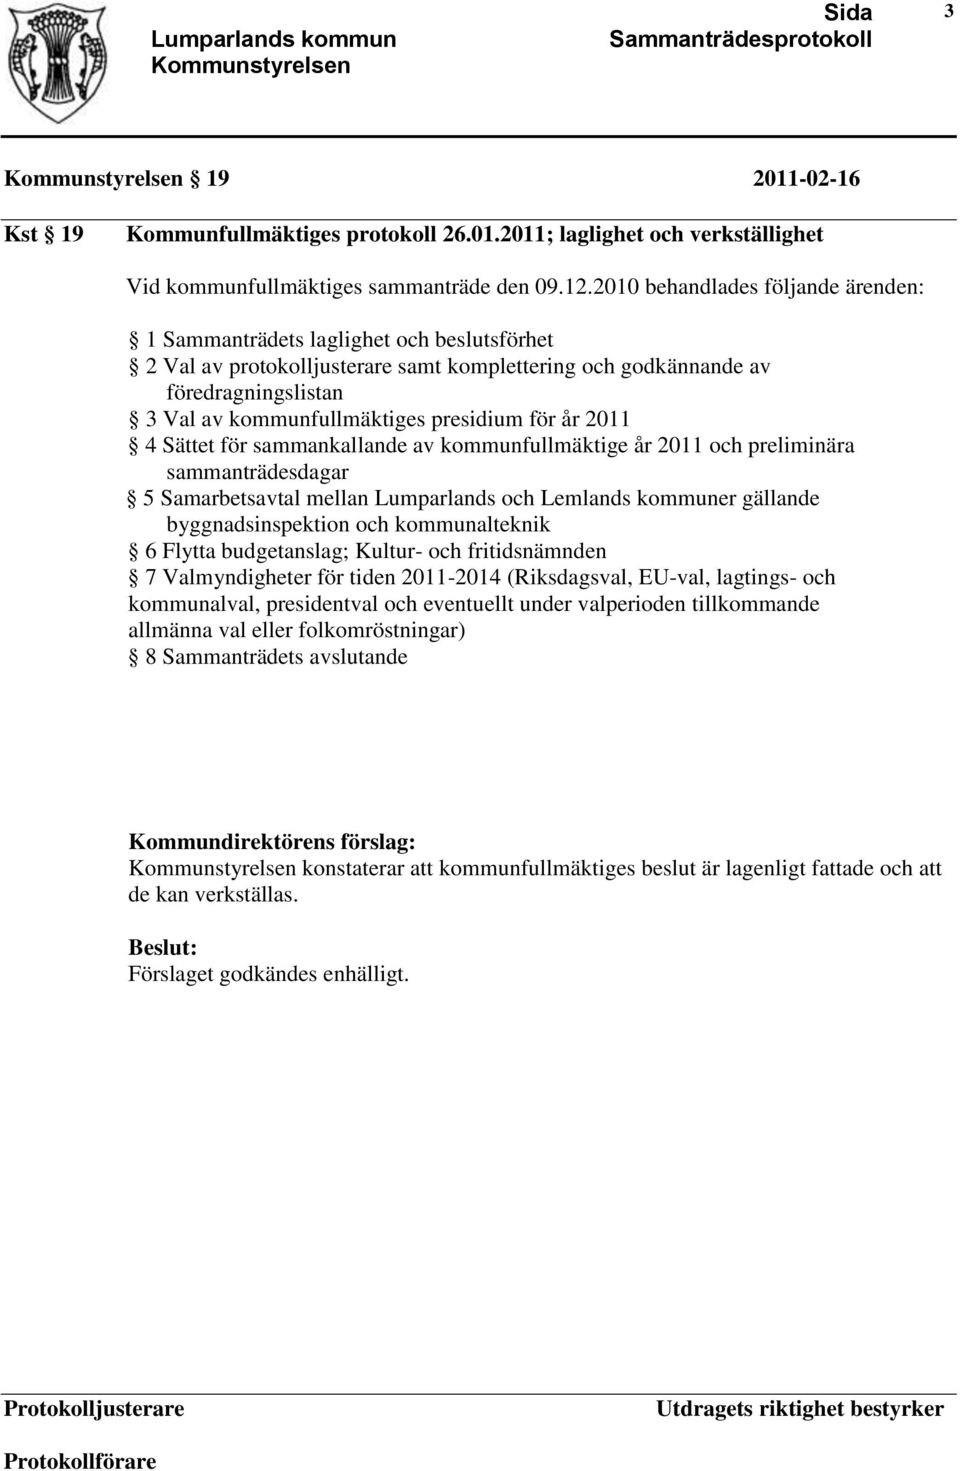 presidium för år 2011 4 Sättet för sammankallande av kommunfullmäktige år 2011 och preliminära sammanträdesdagar 5 Samarbetsavtal mellan Lumparlands och Lemlands kommuner gällande byggnadsinspektion